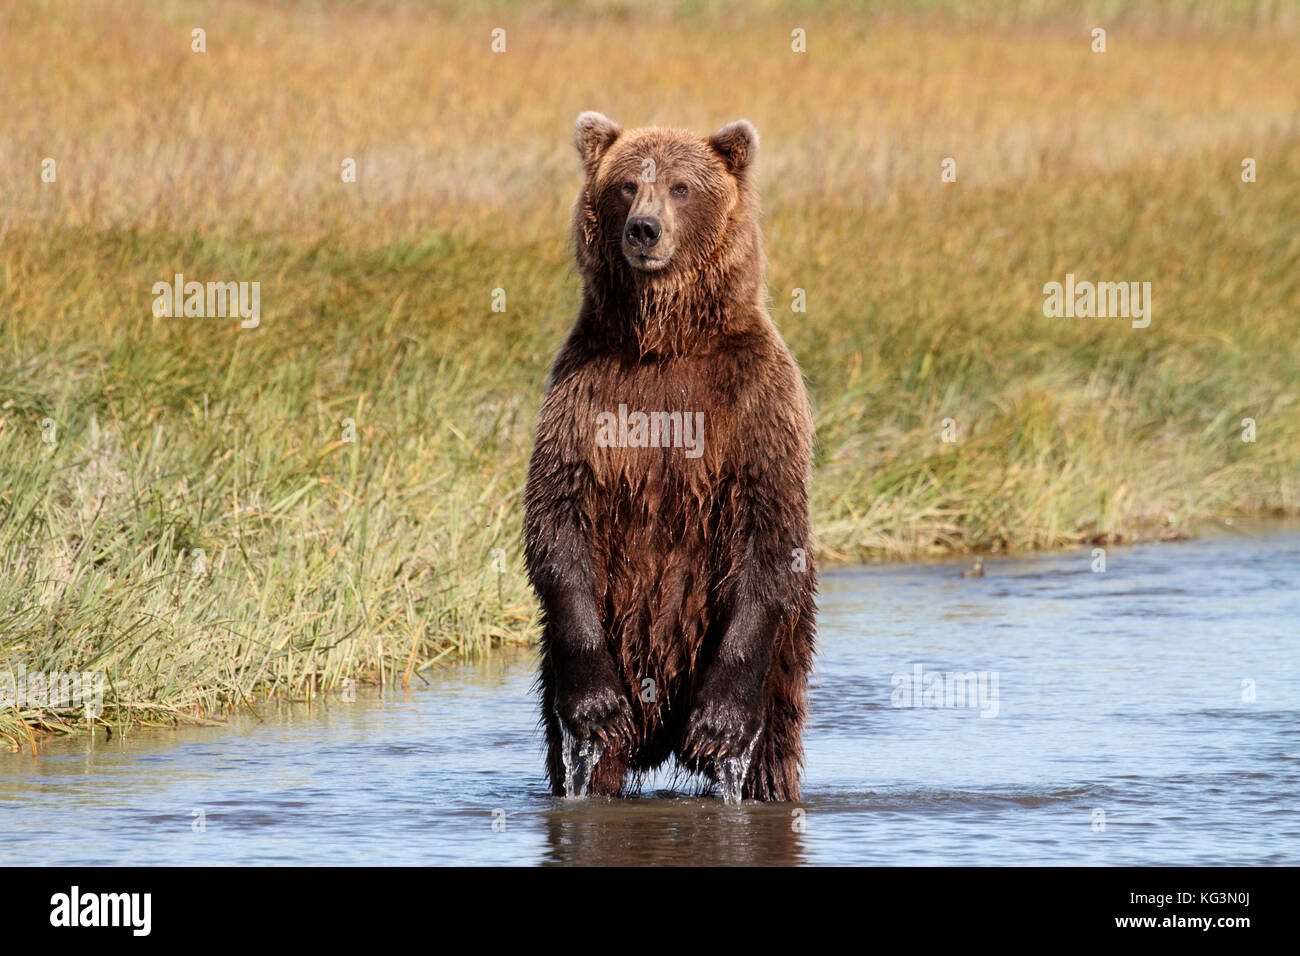 Ein Porträt einer Jagd alaska Braunbär, Grizzly, aufrecht im Wasser mit einem Hintergrund von gelben und grünen Segge Gräser. Stockfoto